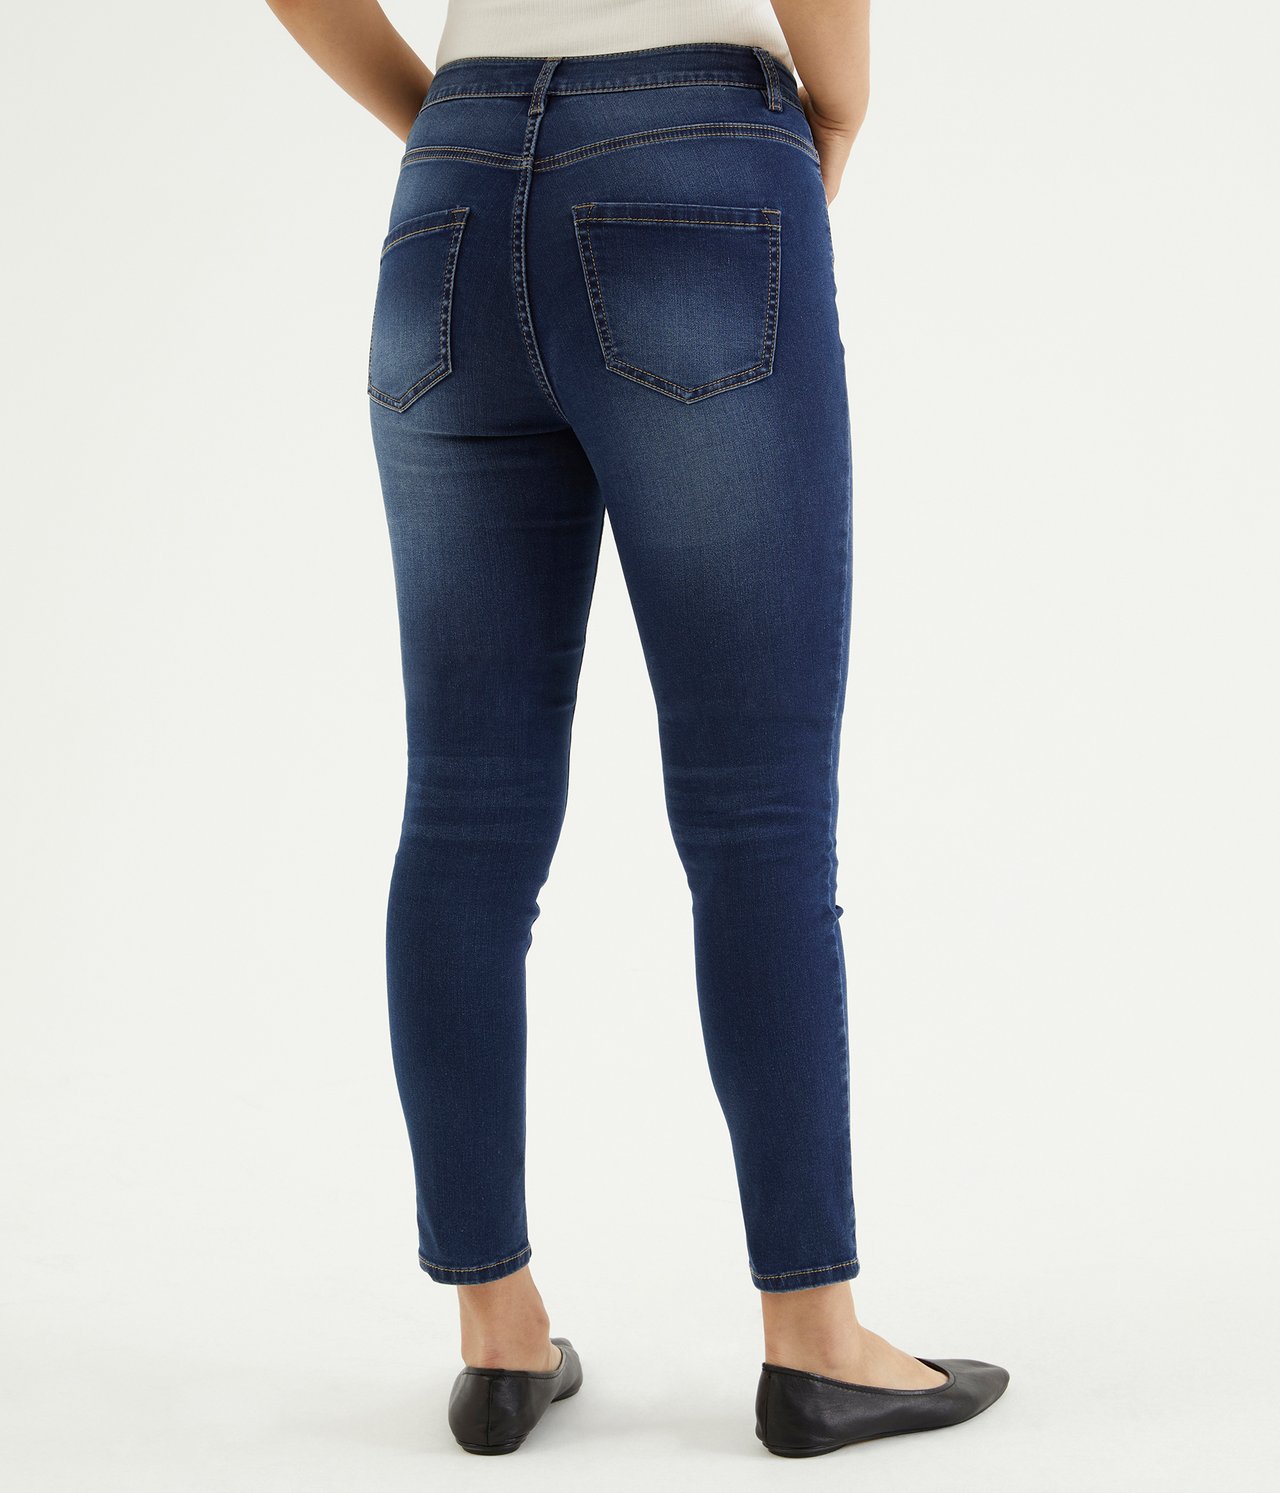 Super slim jeans short leg Mörk denim - null - 2